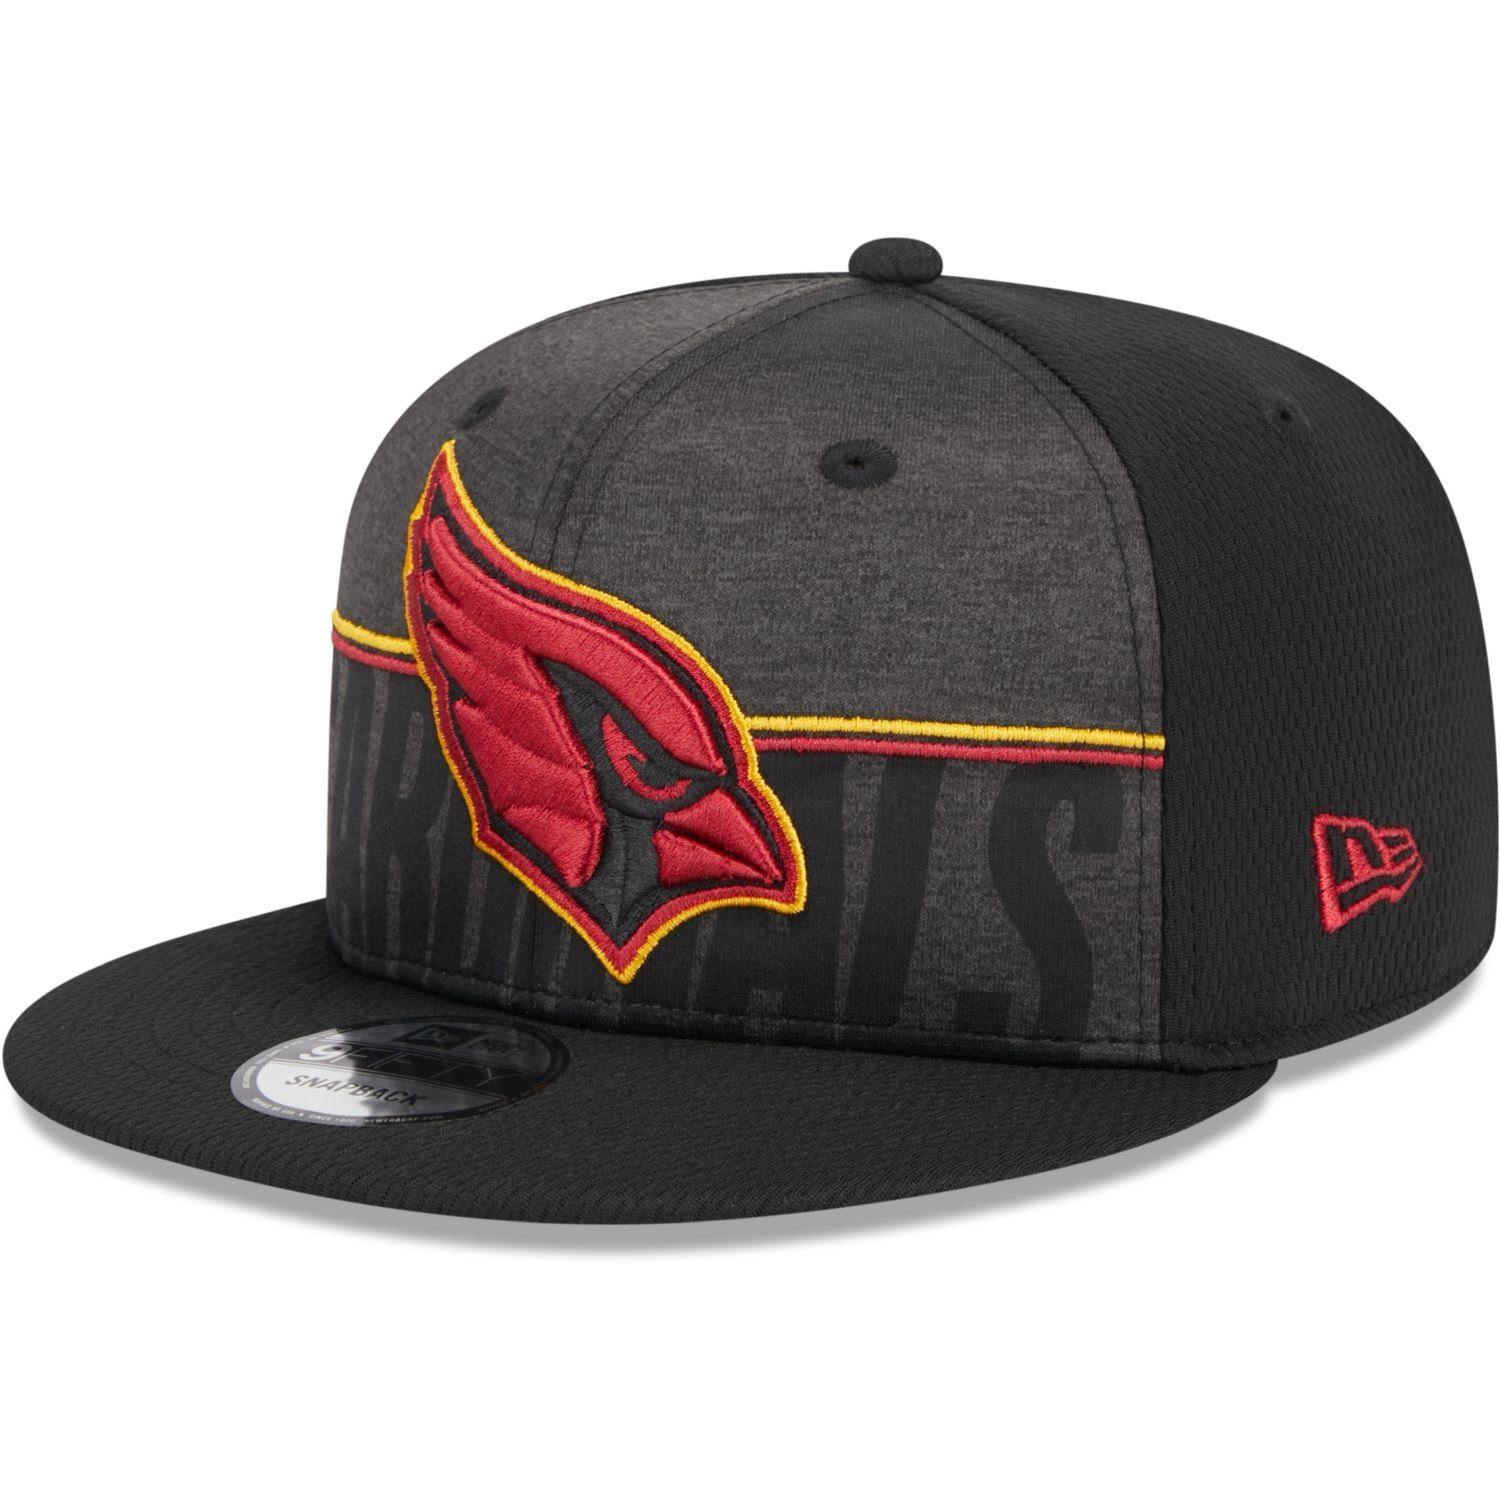 New Era Snapback Cap 9FIFTY TRAINING Arizona Cardinals